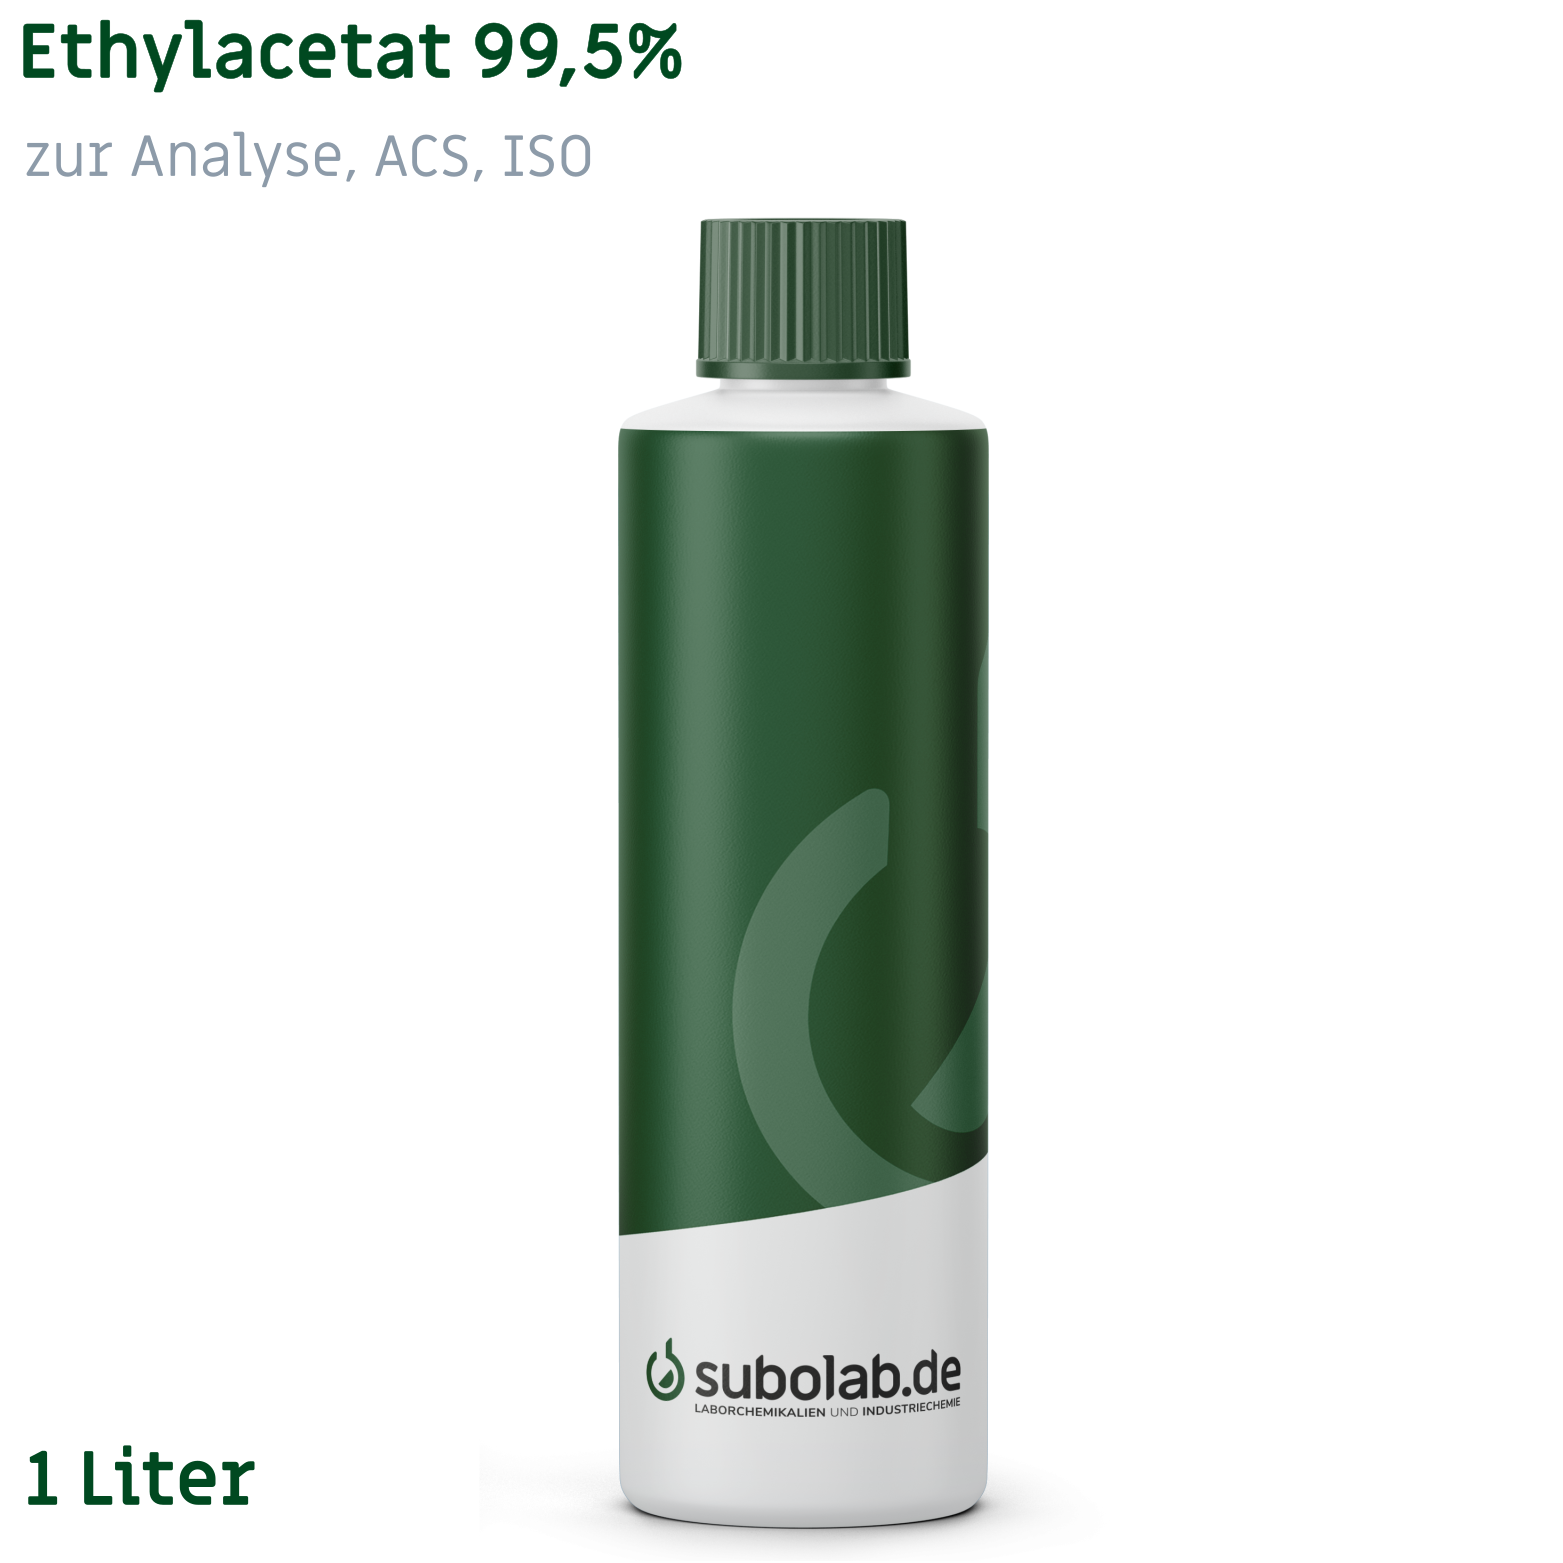 Bild von Ethylacetat 99,5% zur Analyse, ACS, ISO (1 Liter)